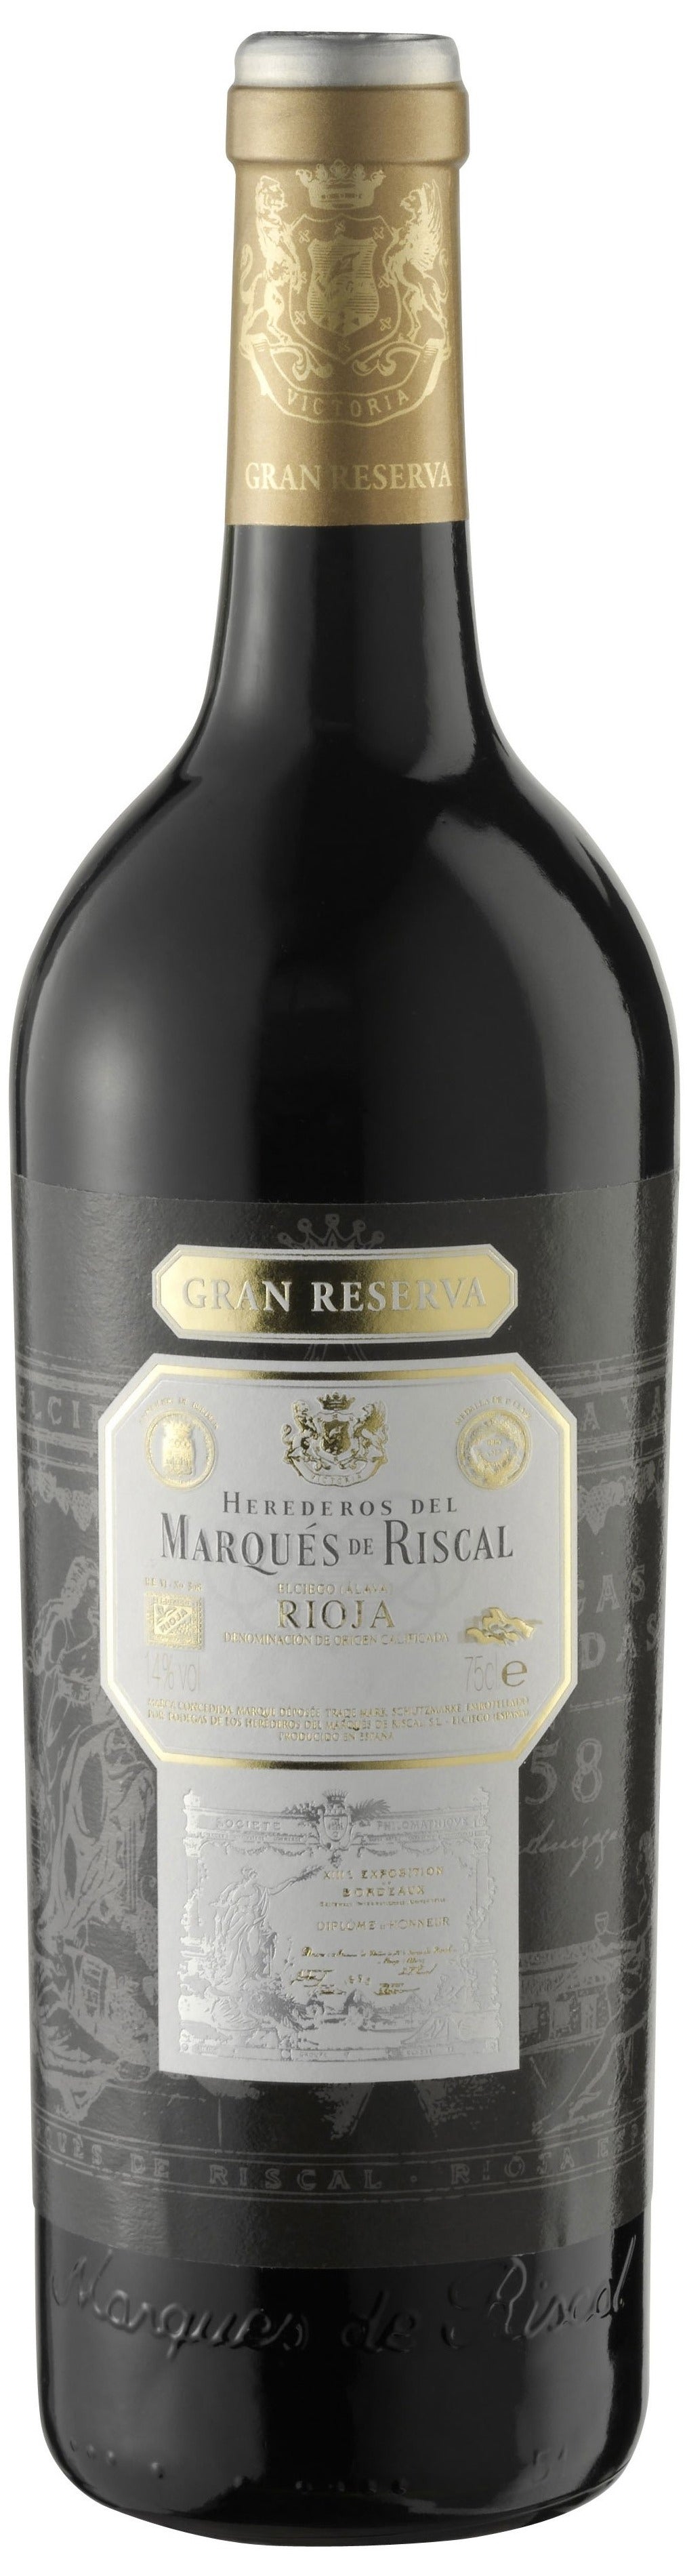 Rioja Gran Reserva 2018 Marqués de Riscal